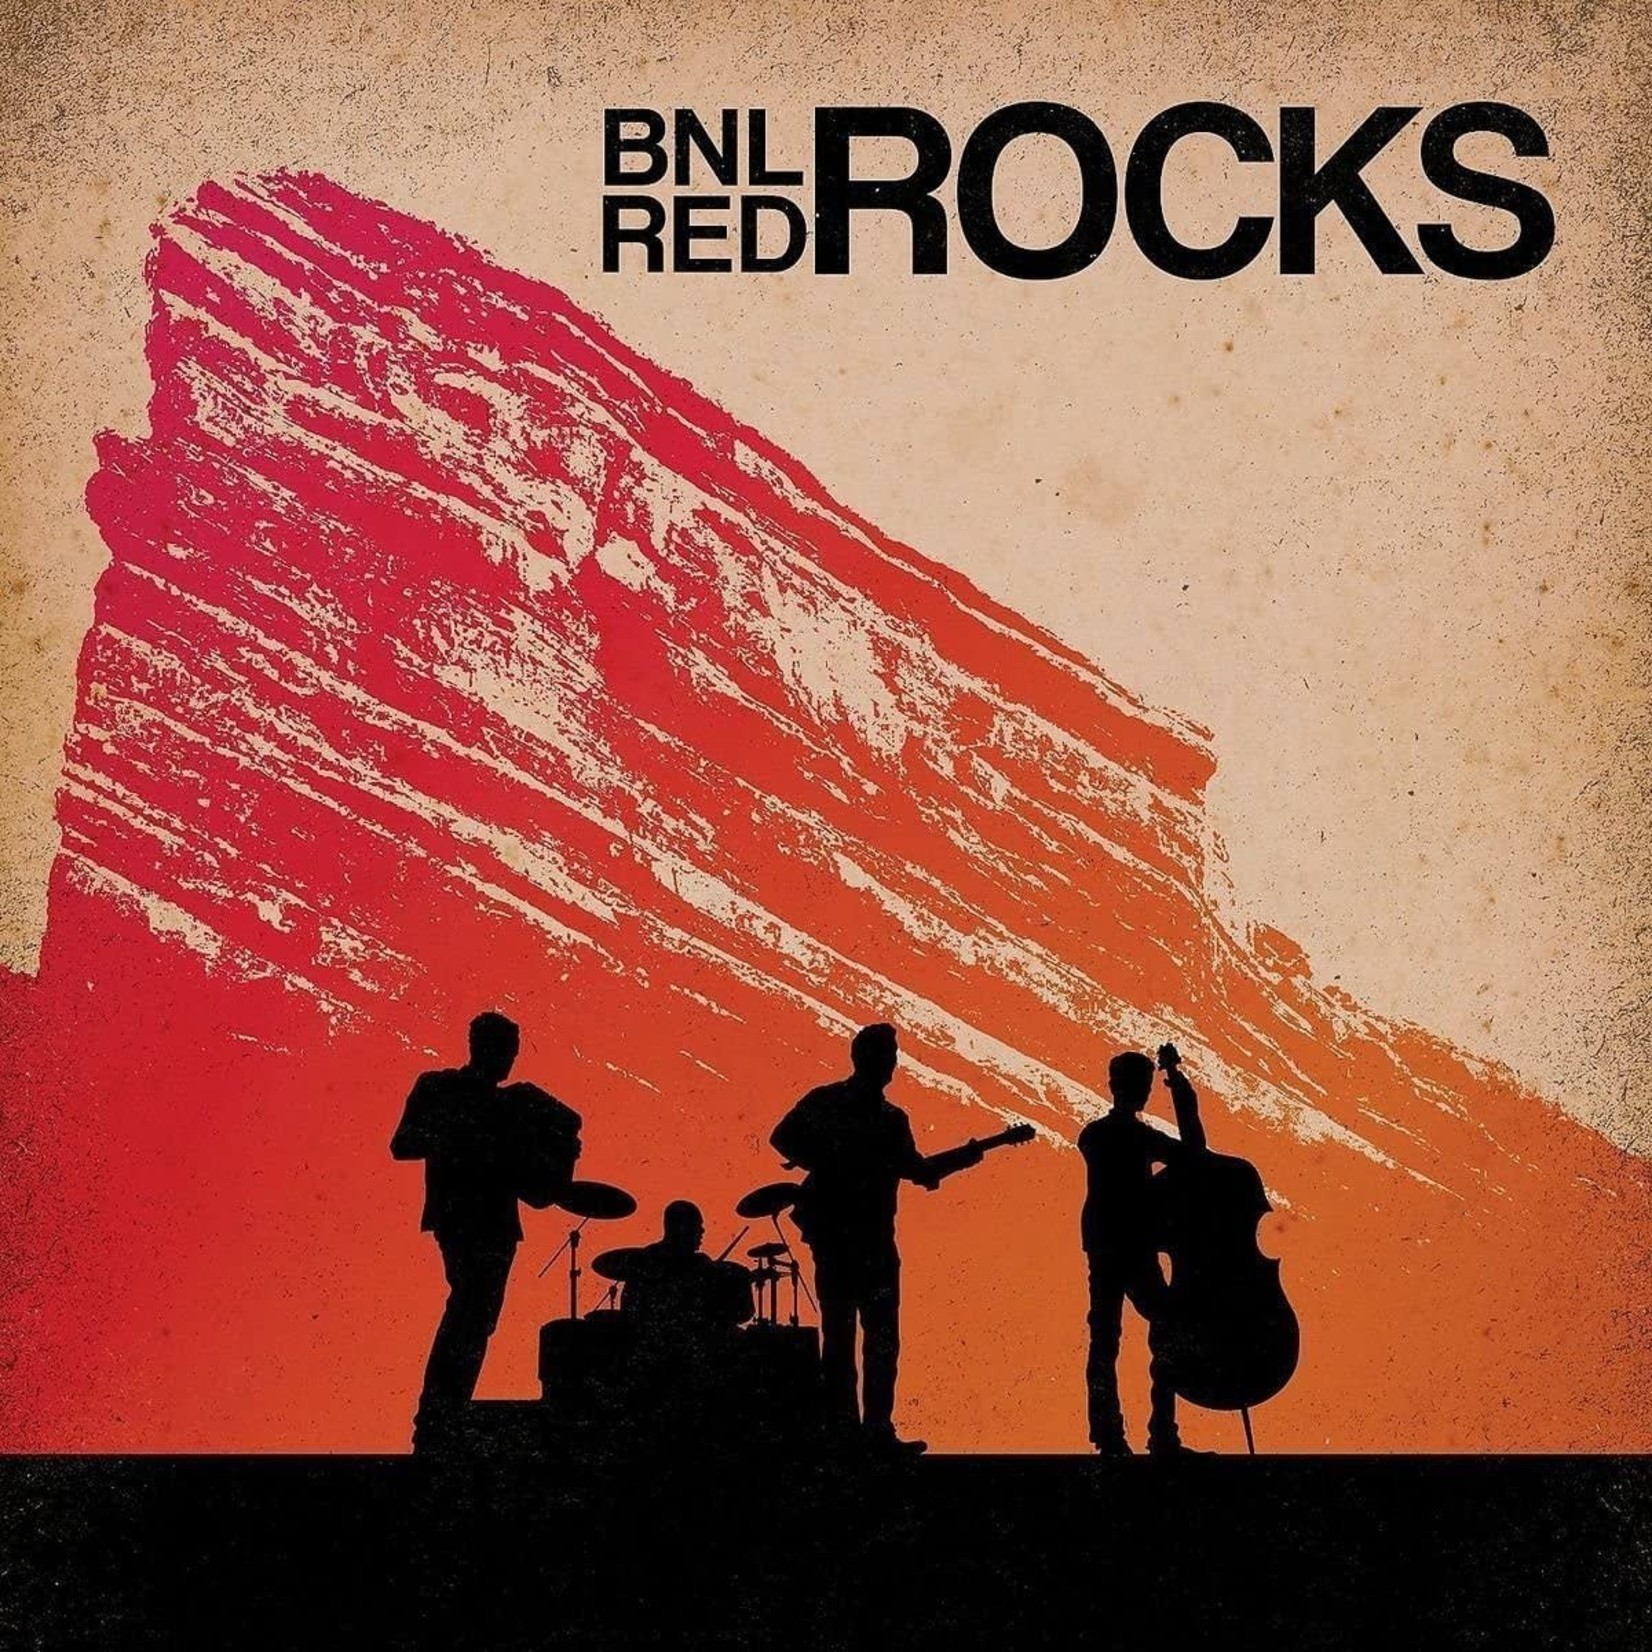 Barenaked Ladies - BNL Rocks Red Rocks [CD]